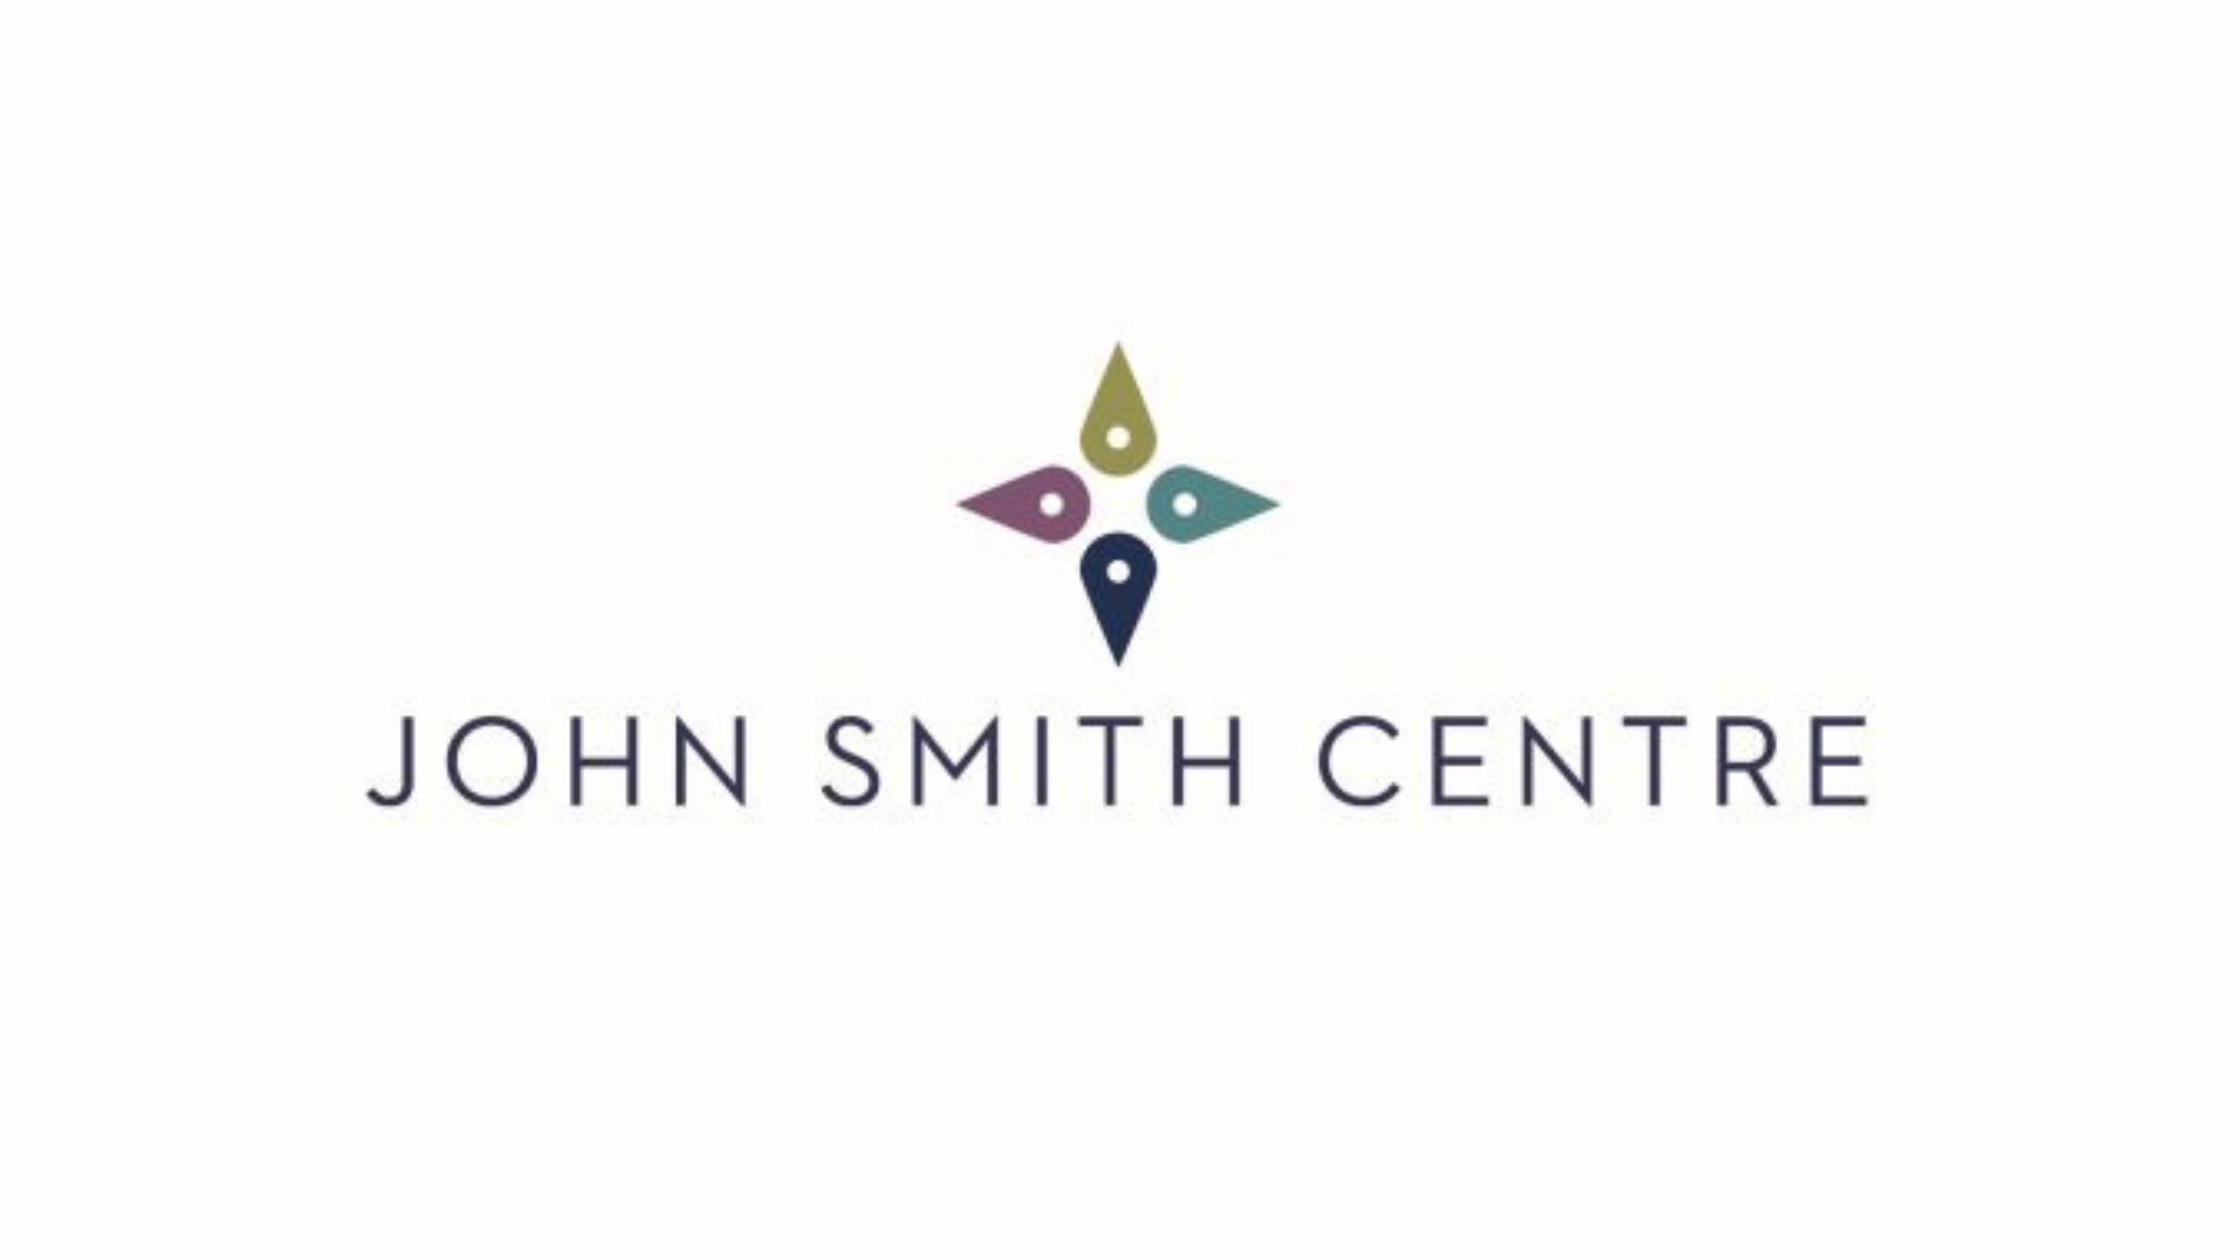 John Smith Centre logo